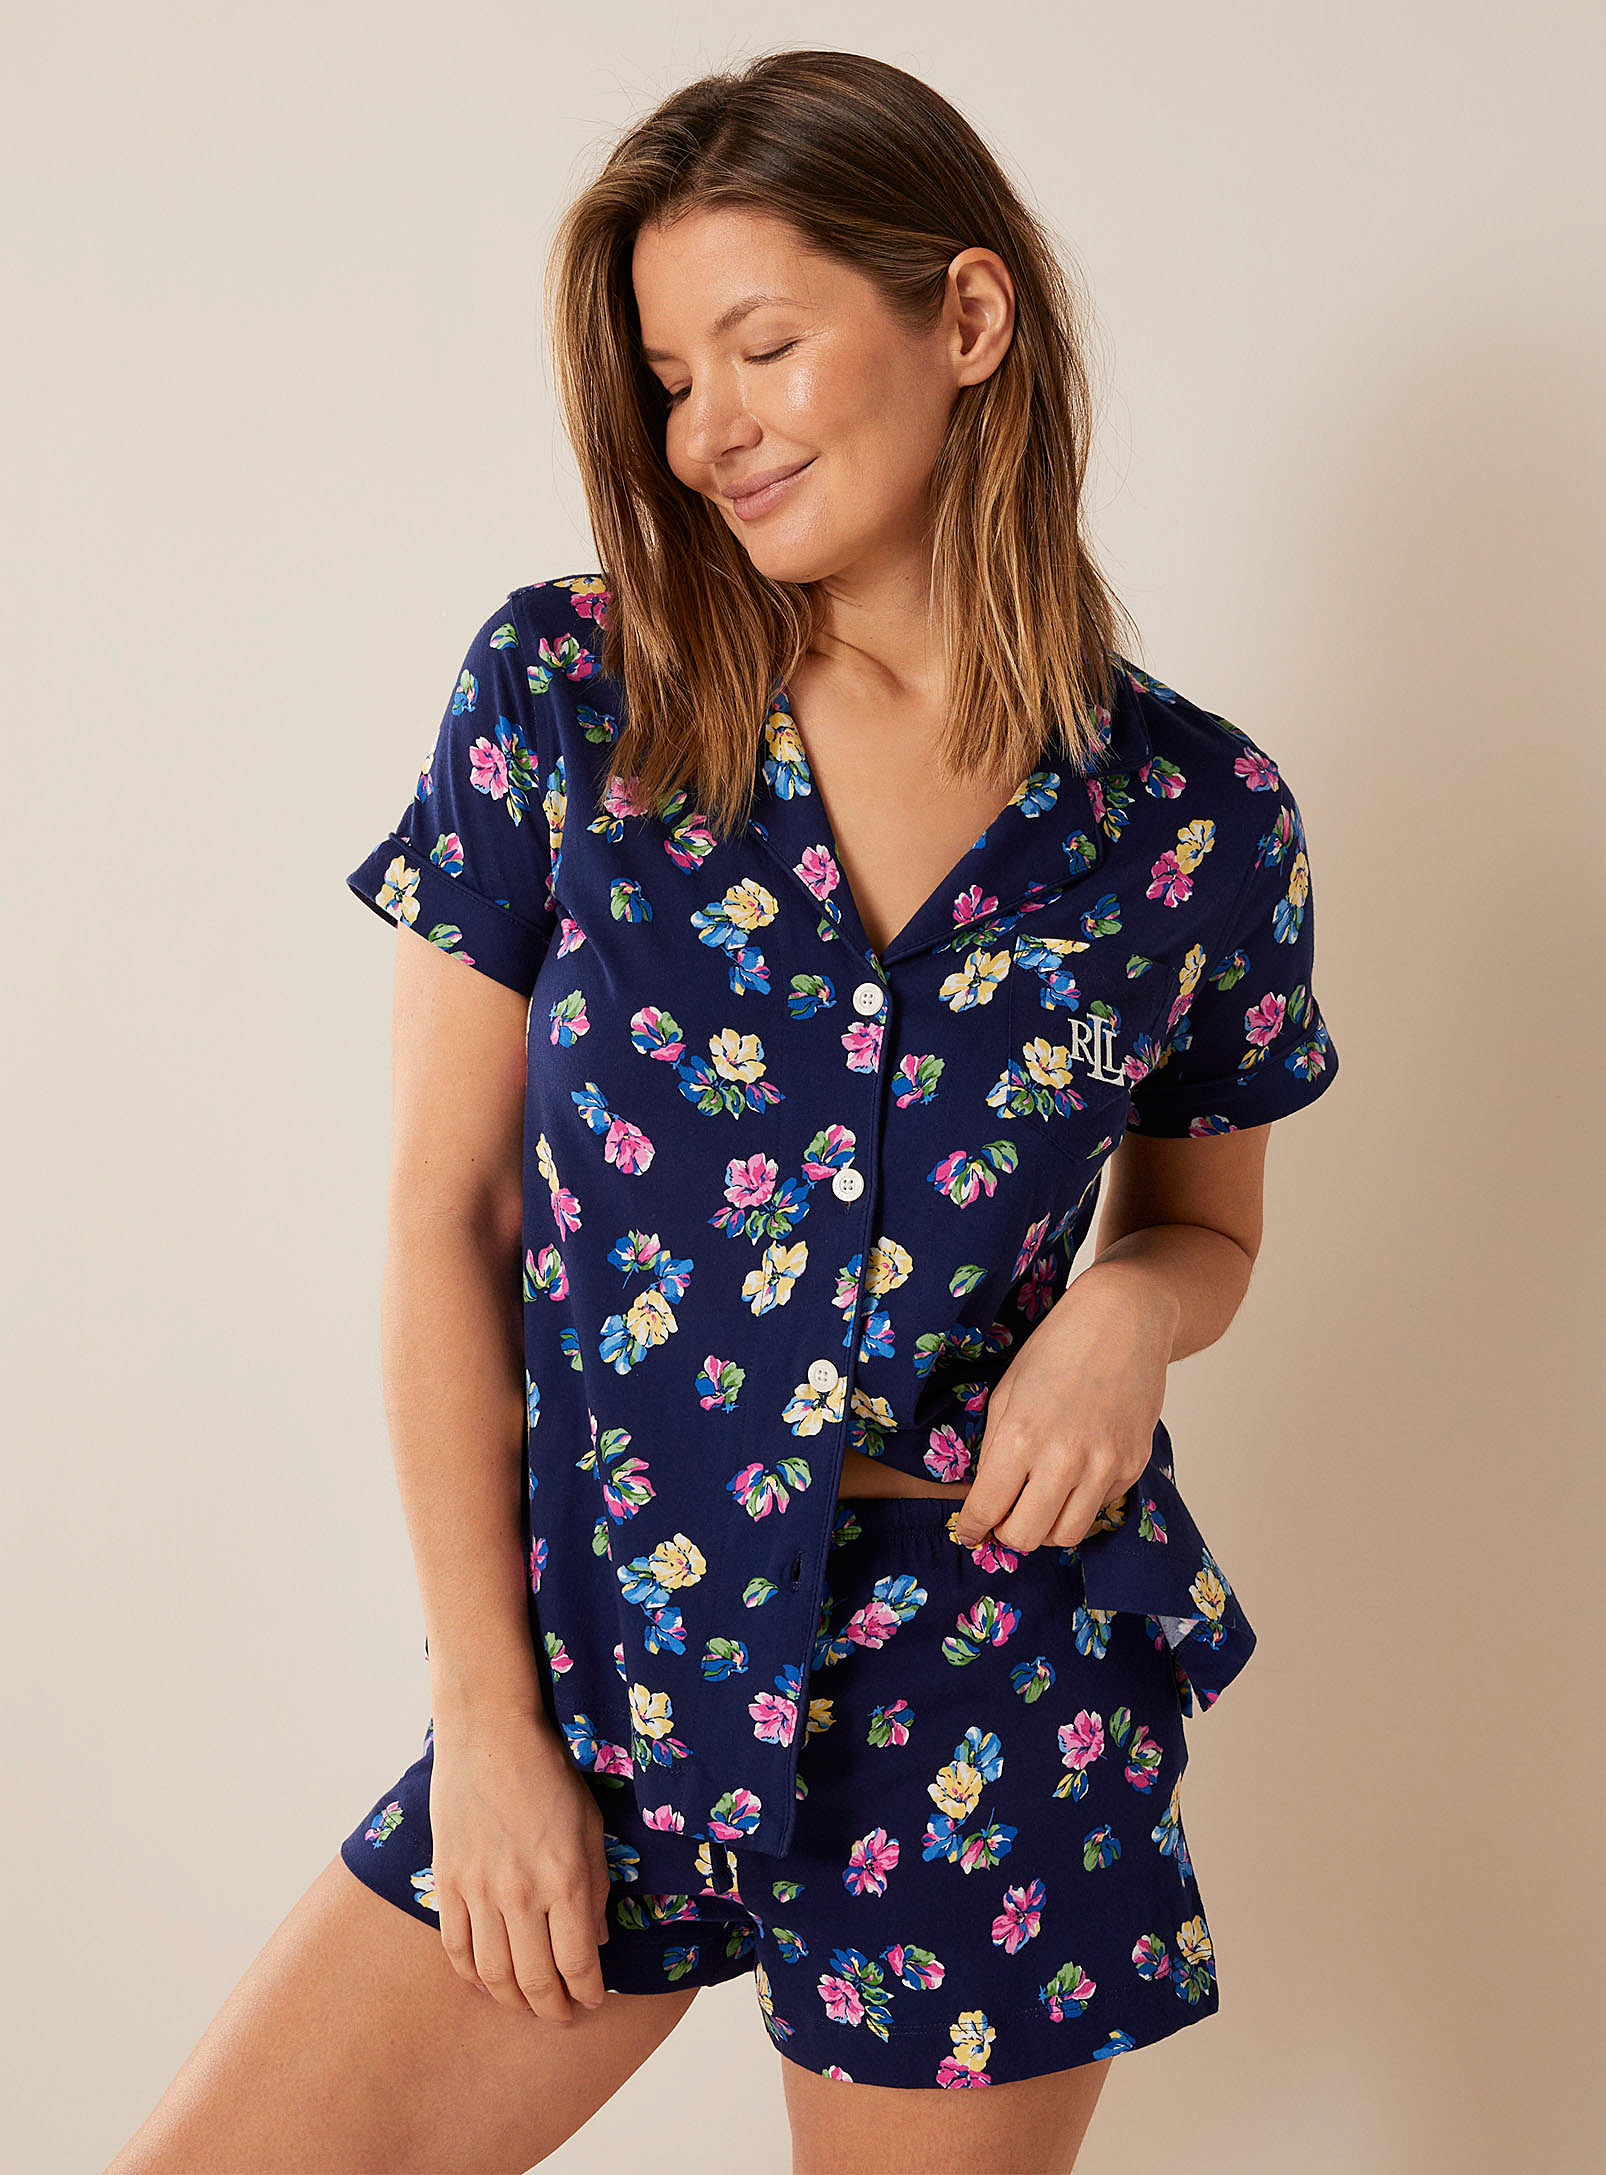 Lauren par Ralph - L'ensemble pyjama fleurs colorées